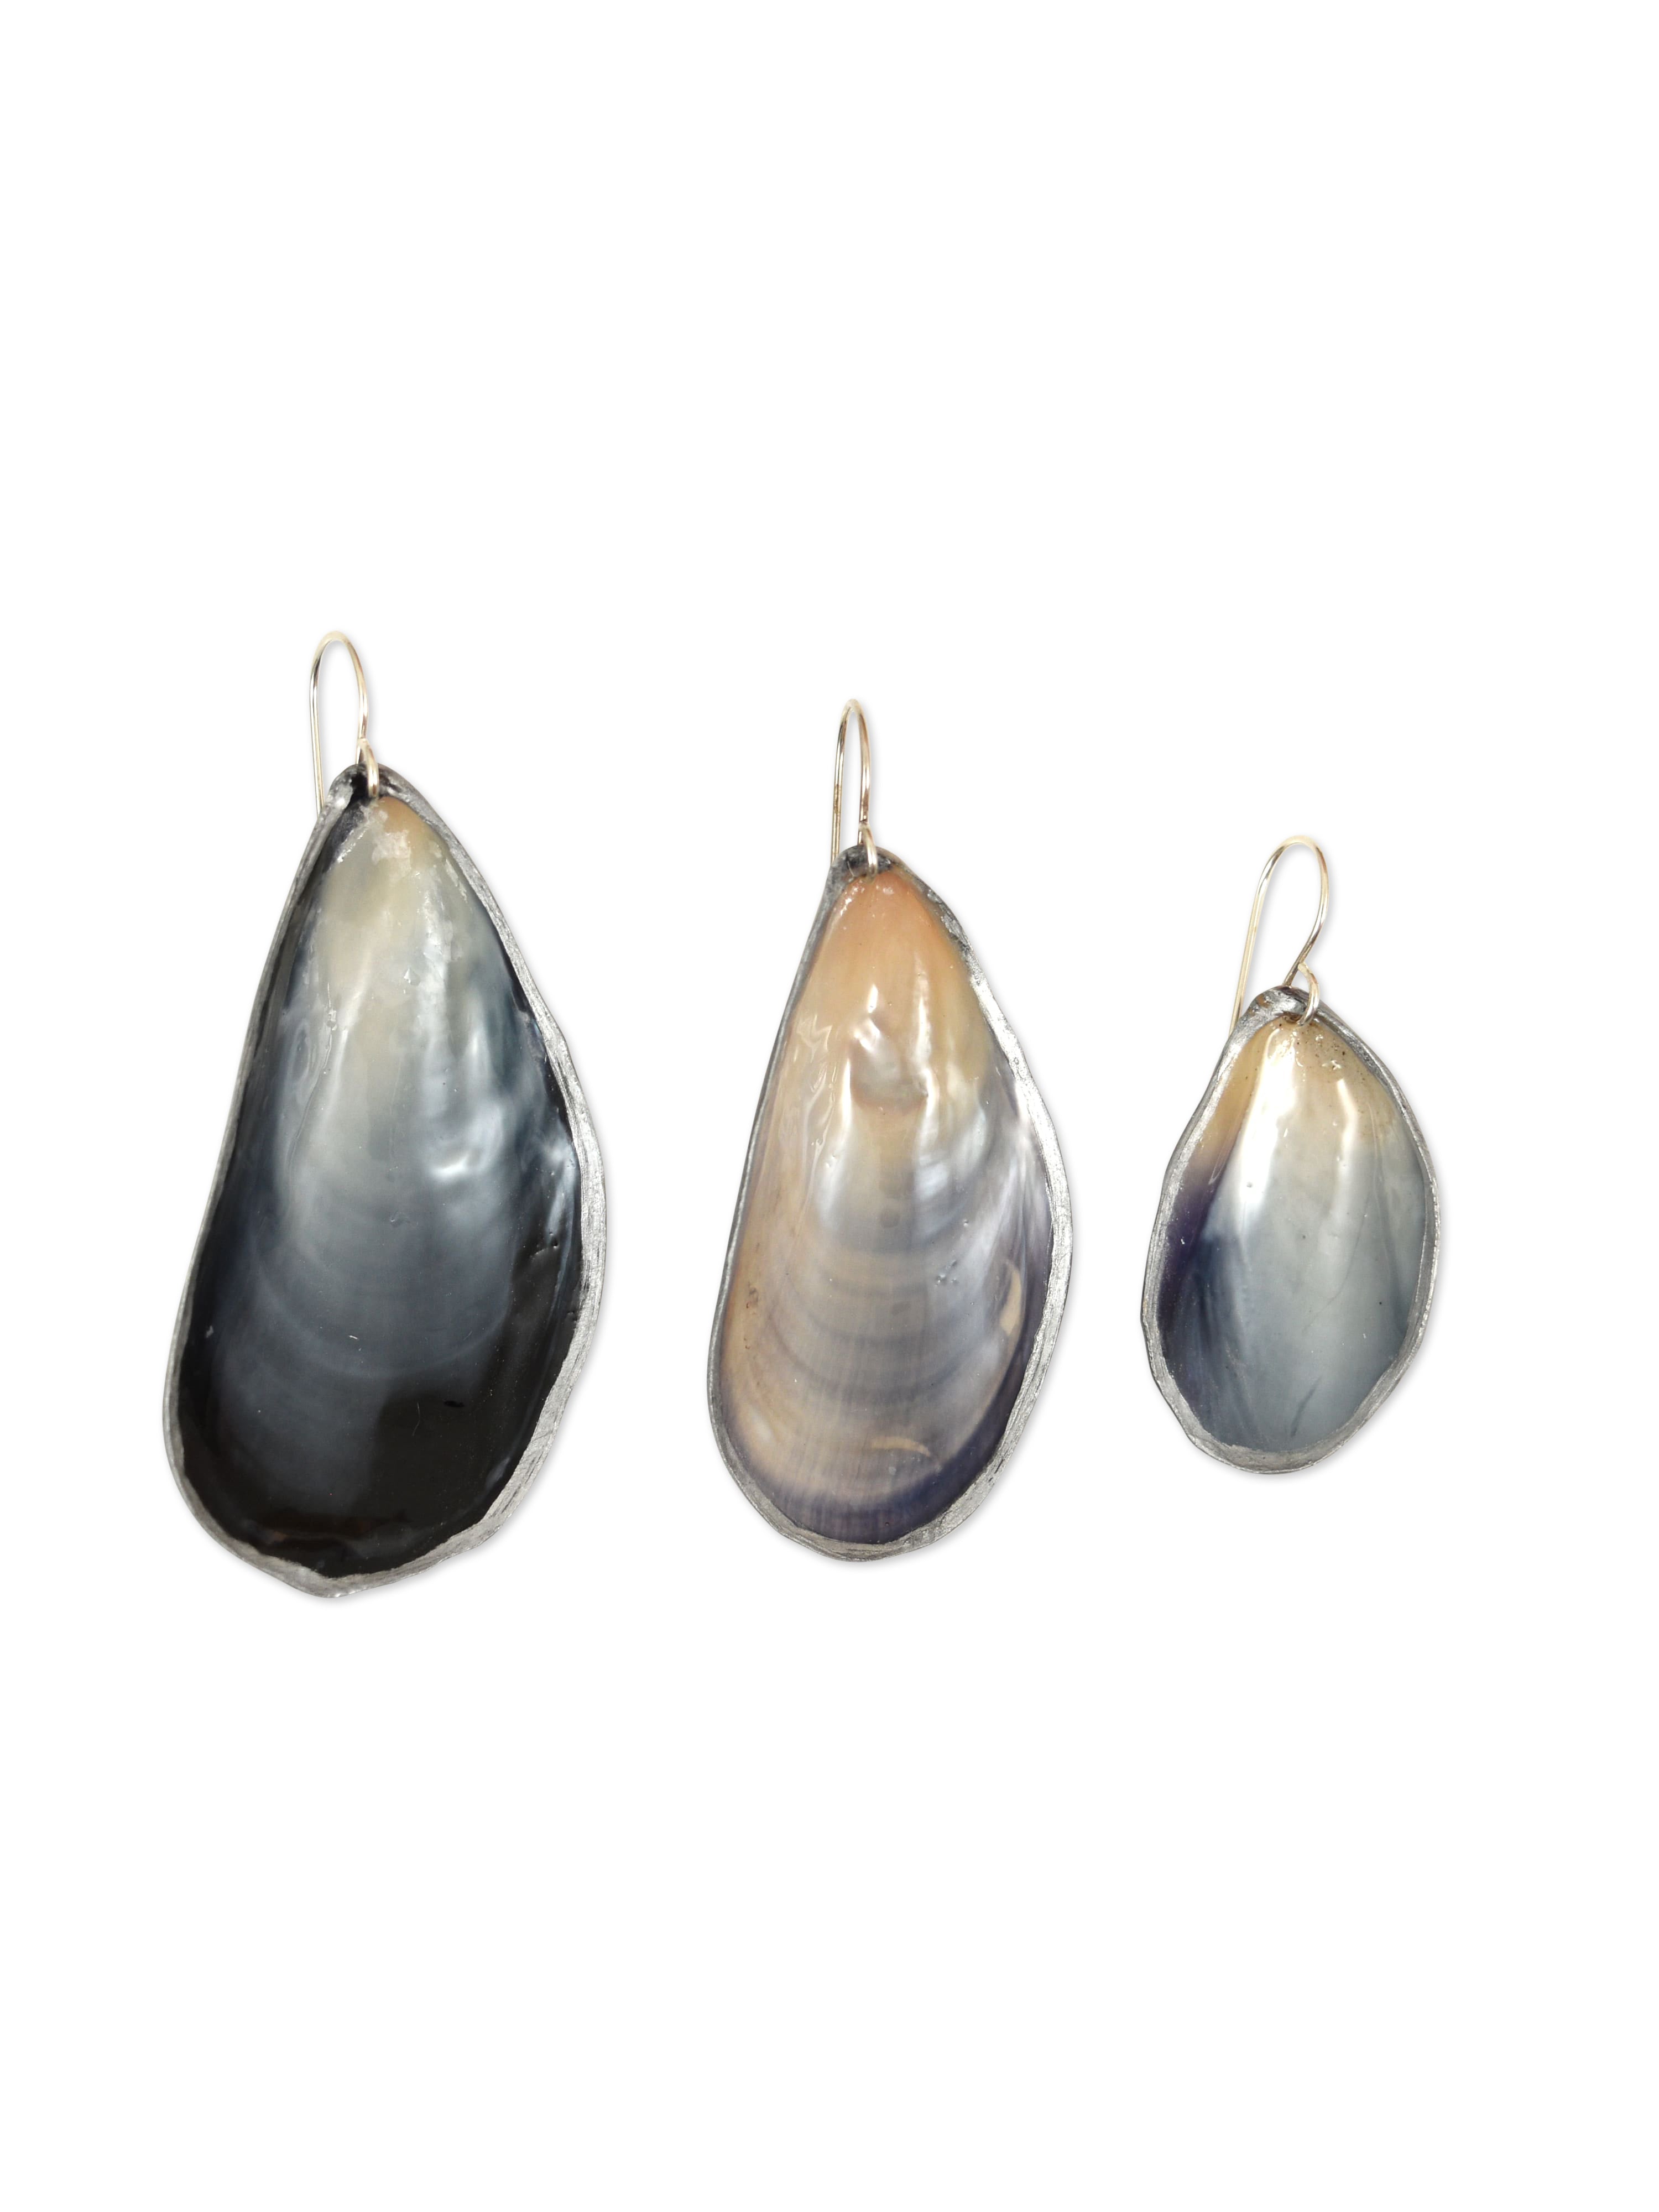 Mussel Earrings in Sterling Silver